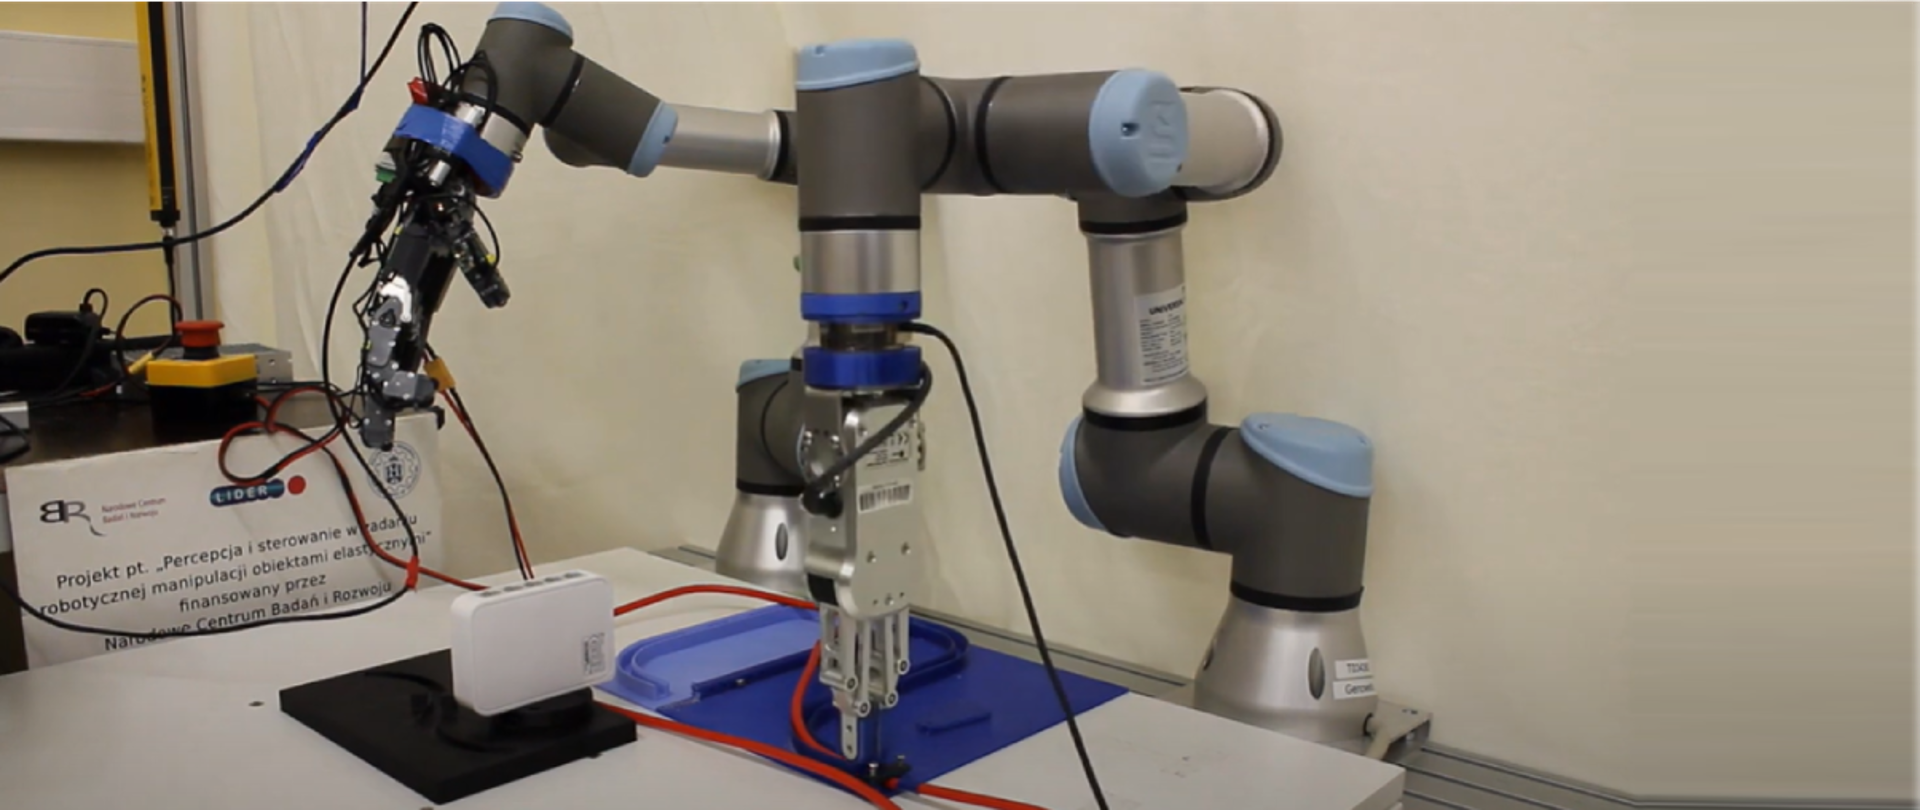 Percepcja i sterowanie w zadaniu robotycznej manipulacji obiektami elastycznymi